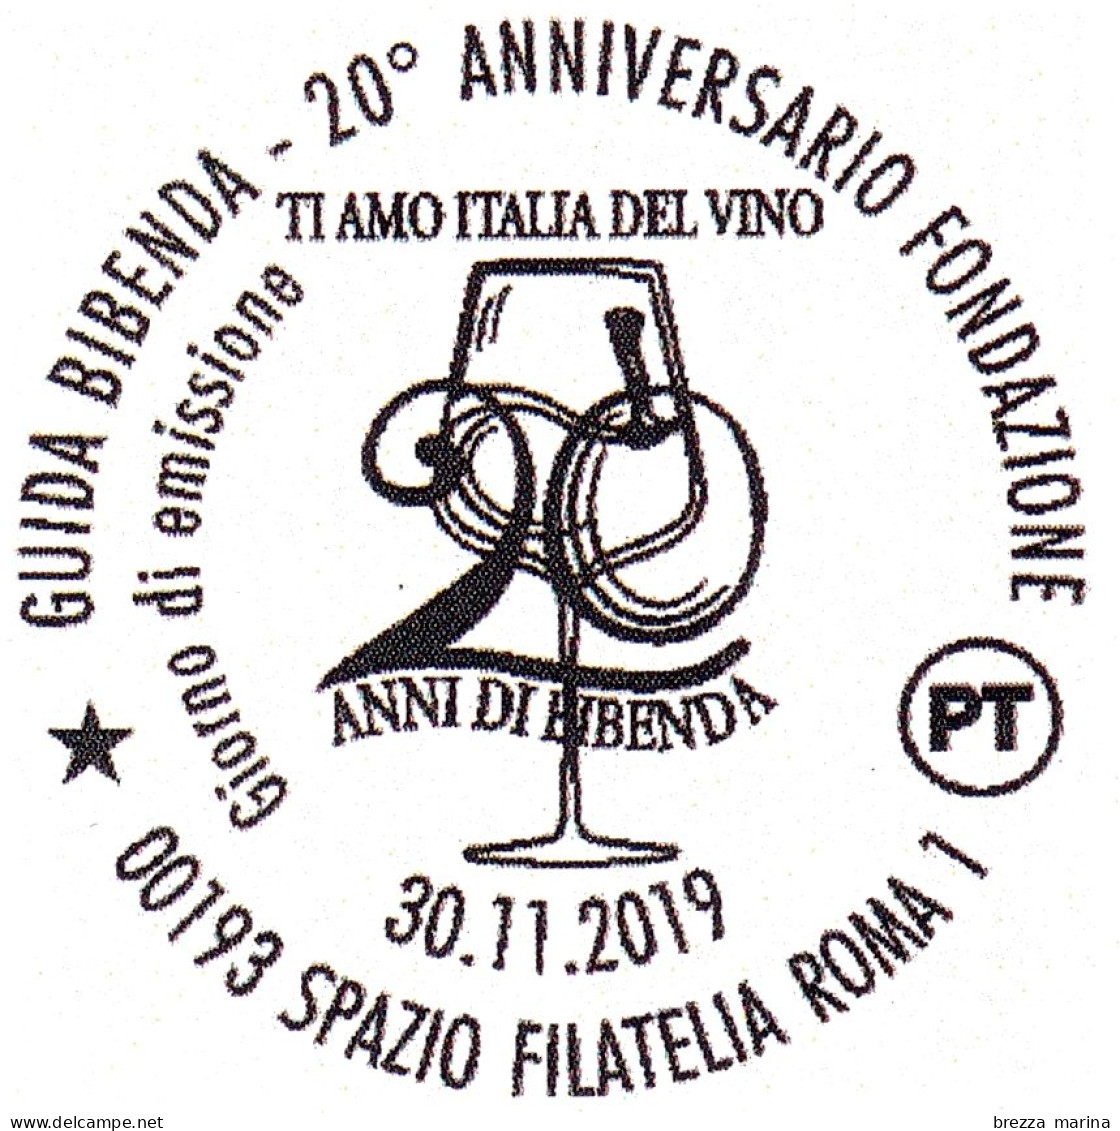 ITALIA - Usato - 2019 - 20 Anni Della Guida Bibenda – Calice Di Vino - B - 2011-20: Usados